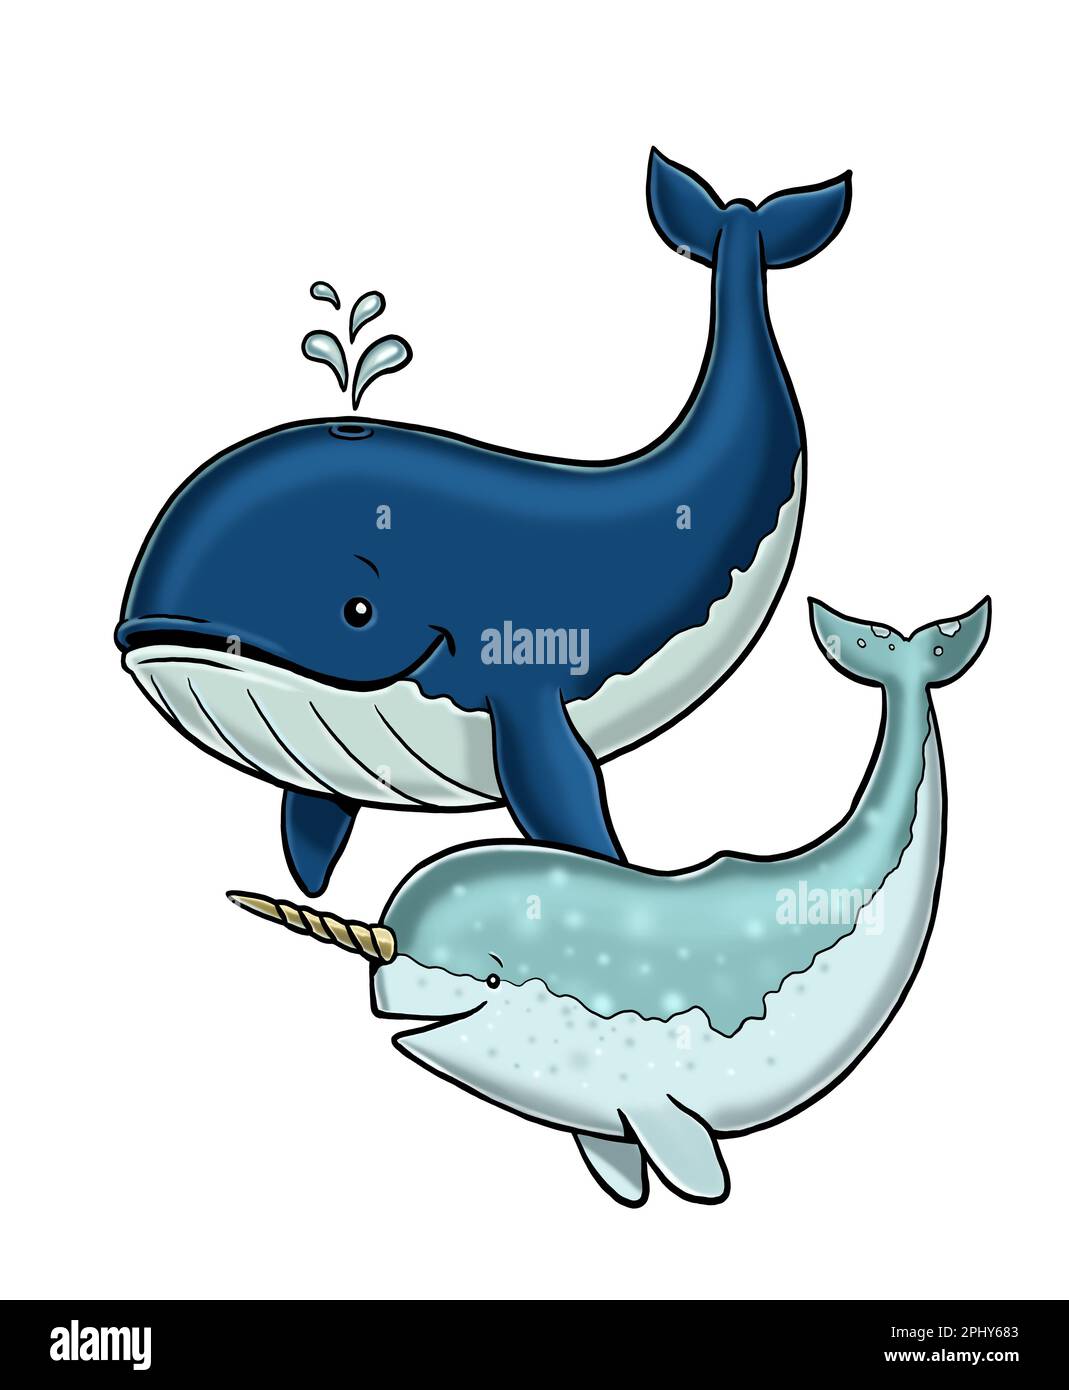 Simpatico narrativo e illustrazione di balena. Modello isolato con animali divertenti e felici. Pagina da colorare per bambini. Foto Stock